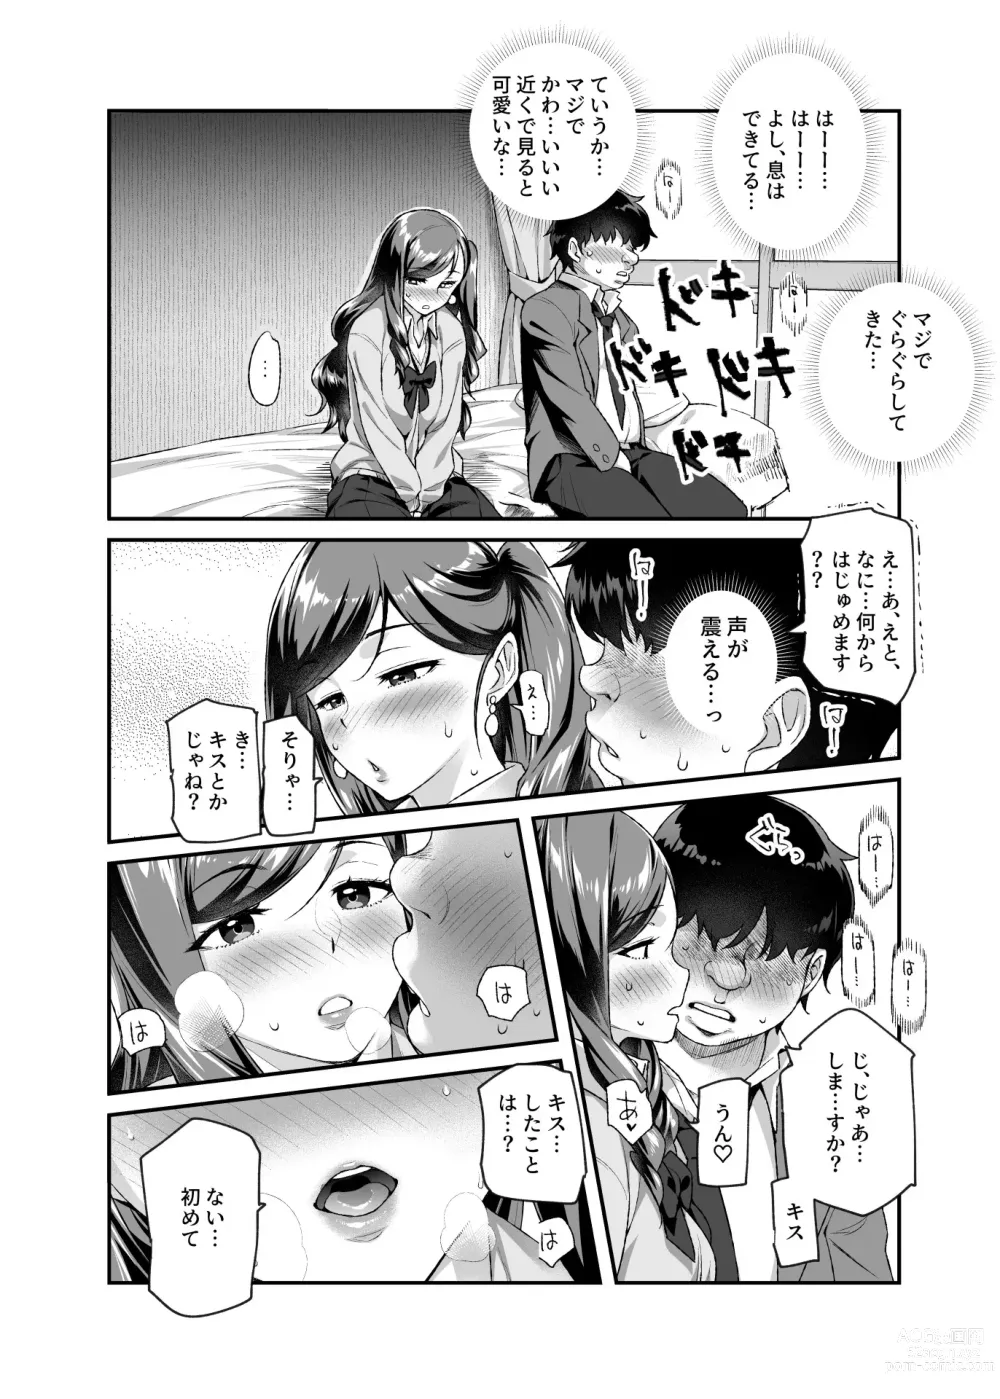 Page 9 of doujinshi Ore de Shojohaka Sureba Shiawase ninaruto Bazzutte EX